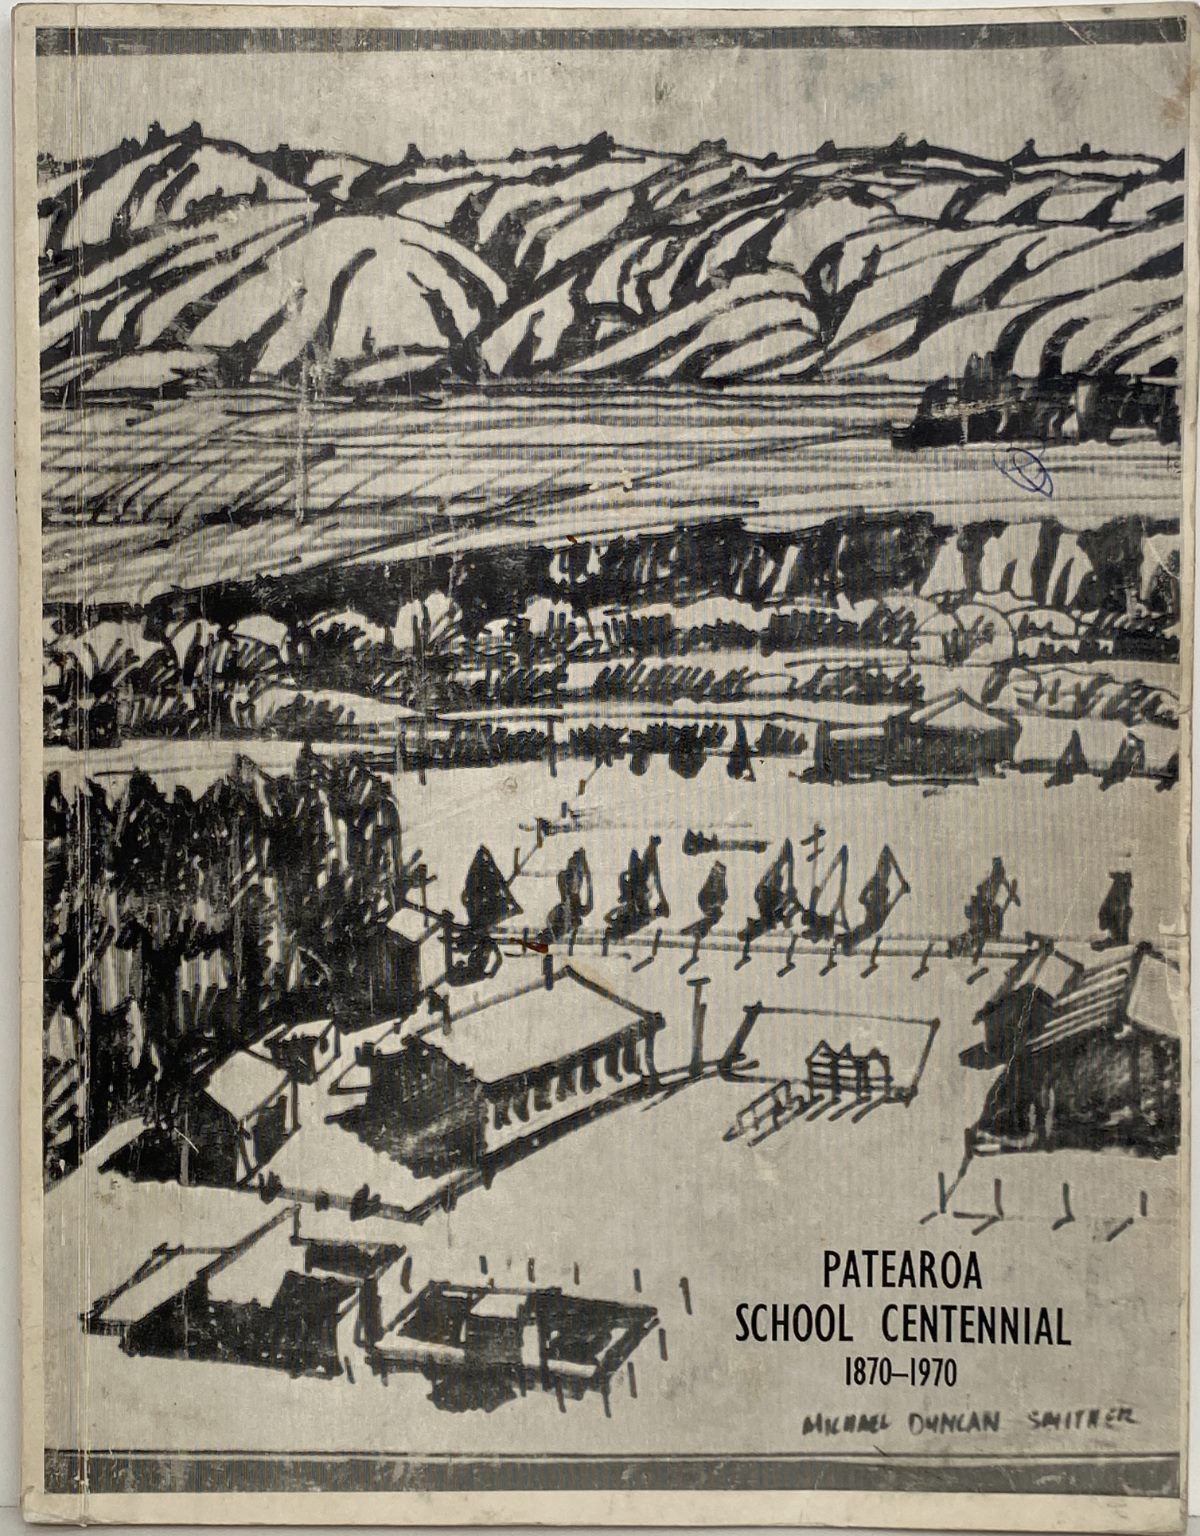 PATEROA SCHOOL CENTENNIAL 1870 - 1970